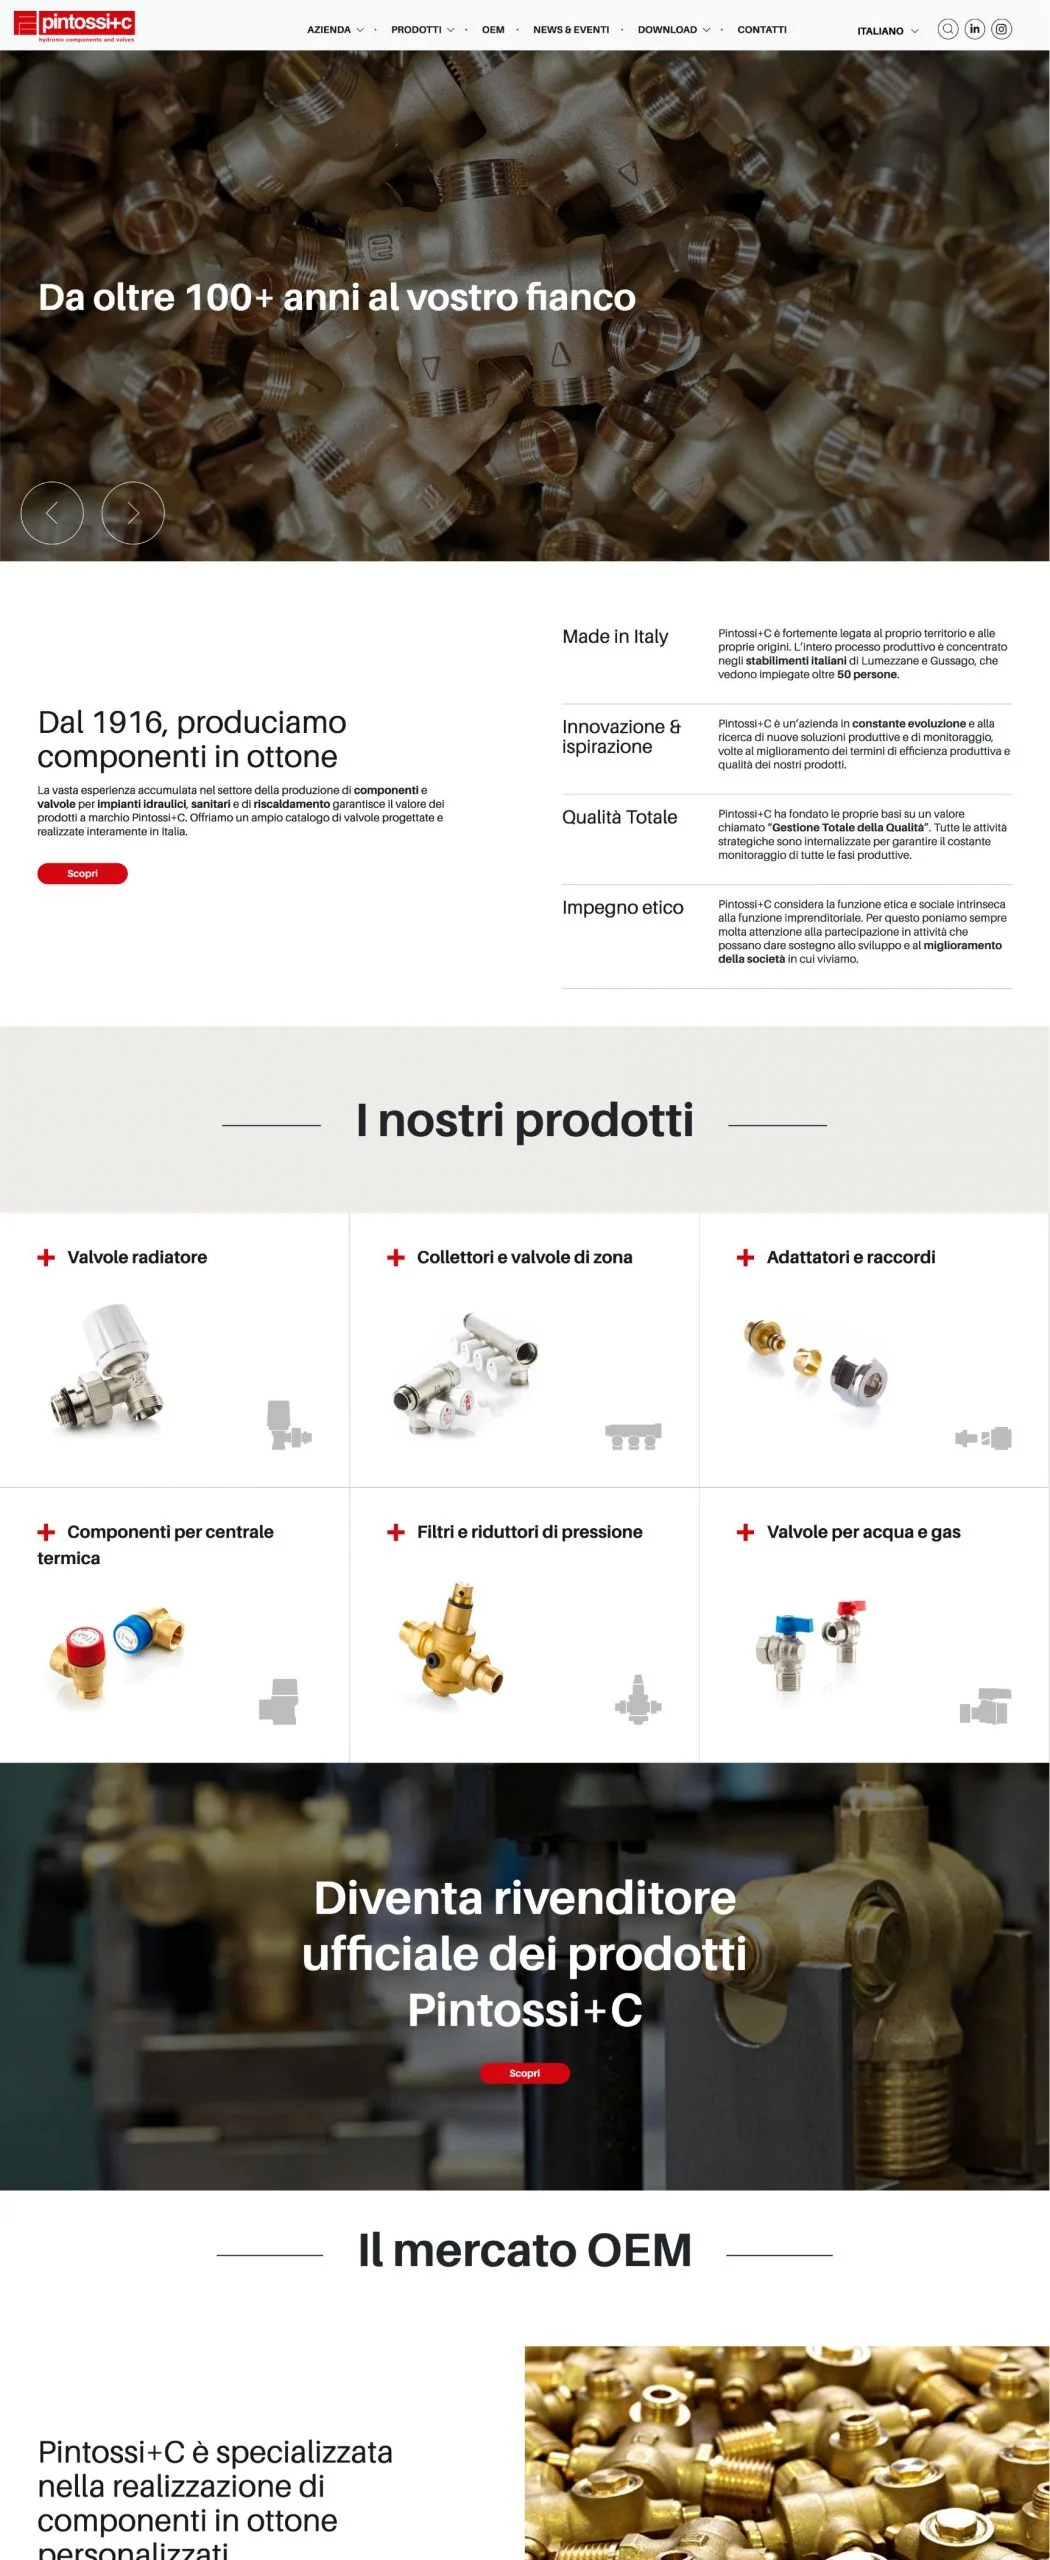 Dexa: realizzazione sito web per Pintossi+C mockup